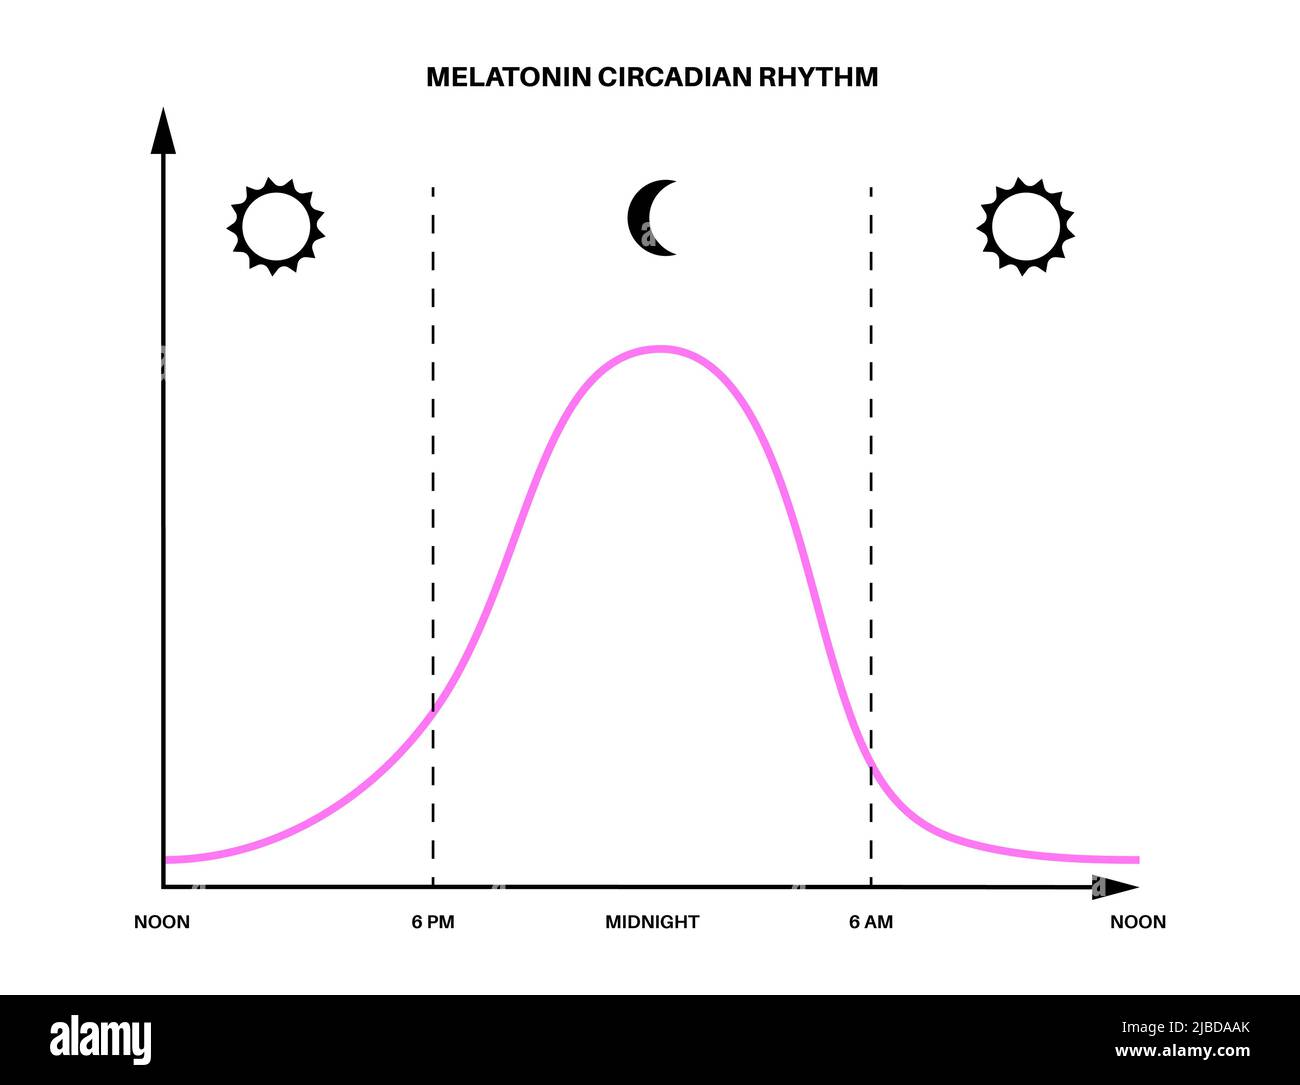 Melatonin and Circadian Rhythms. Цикл пробуждение